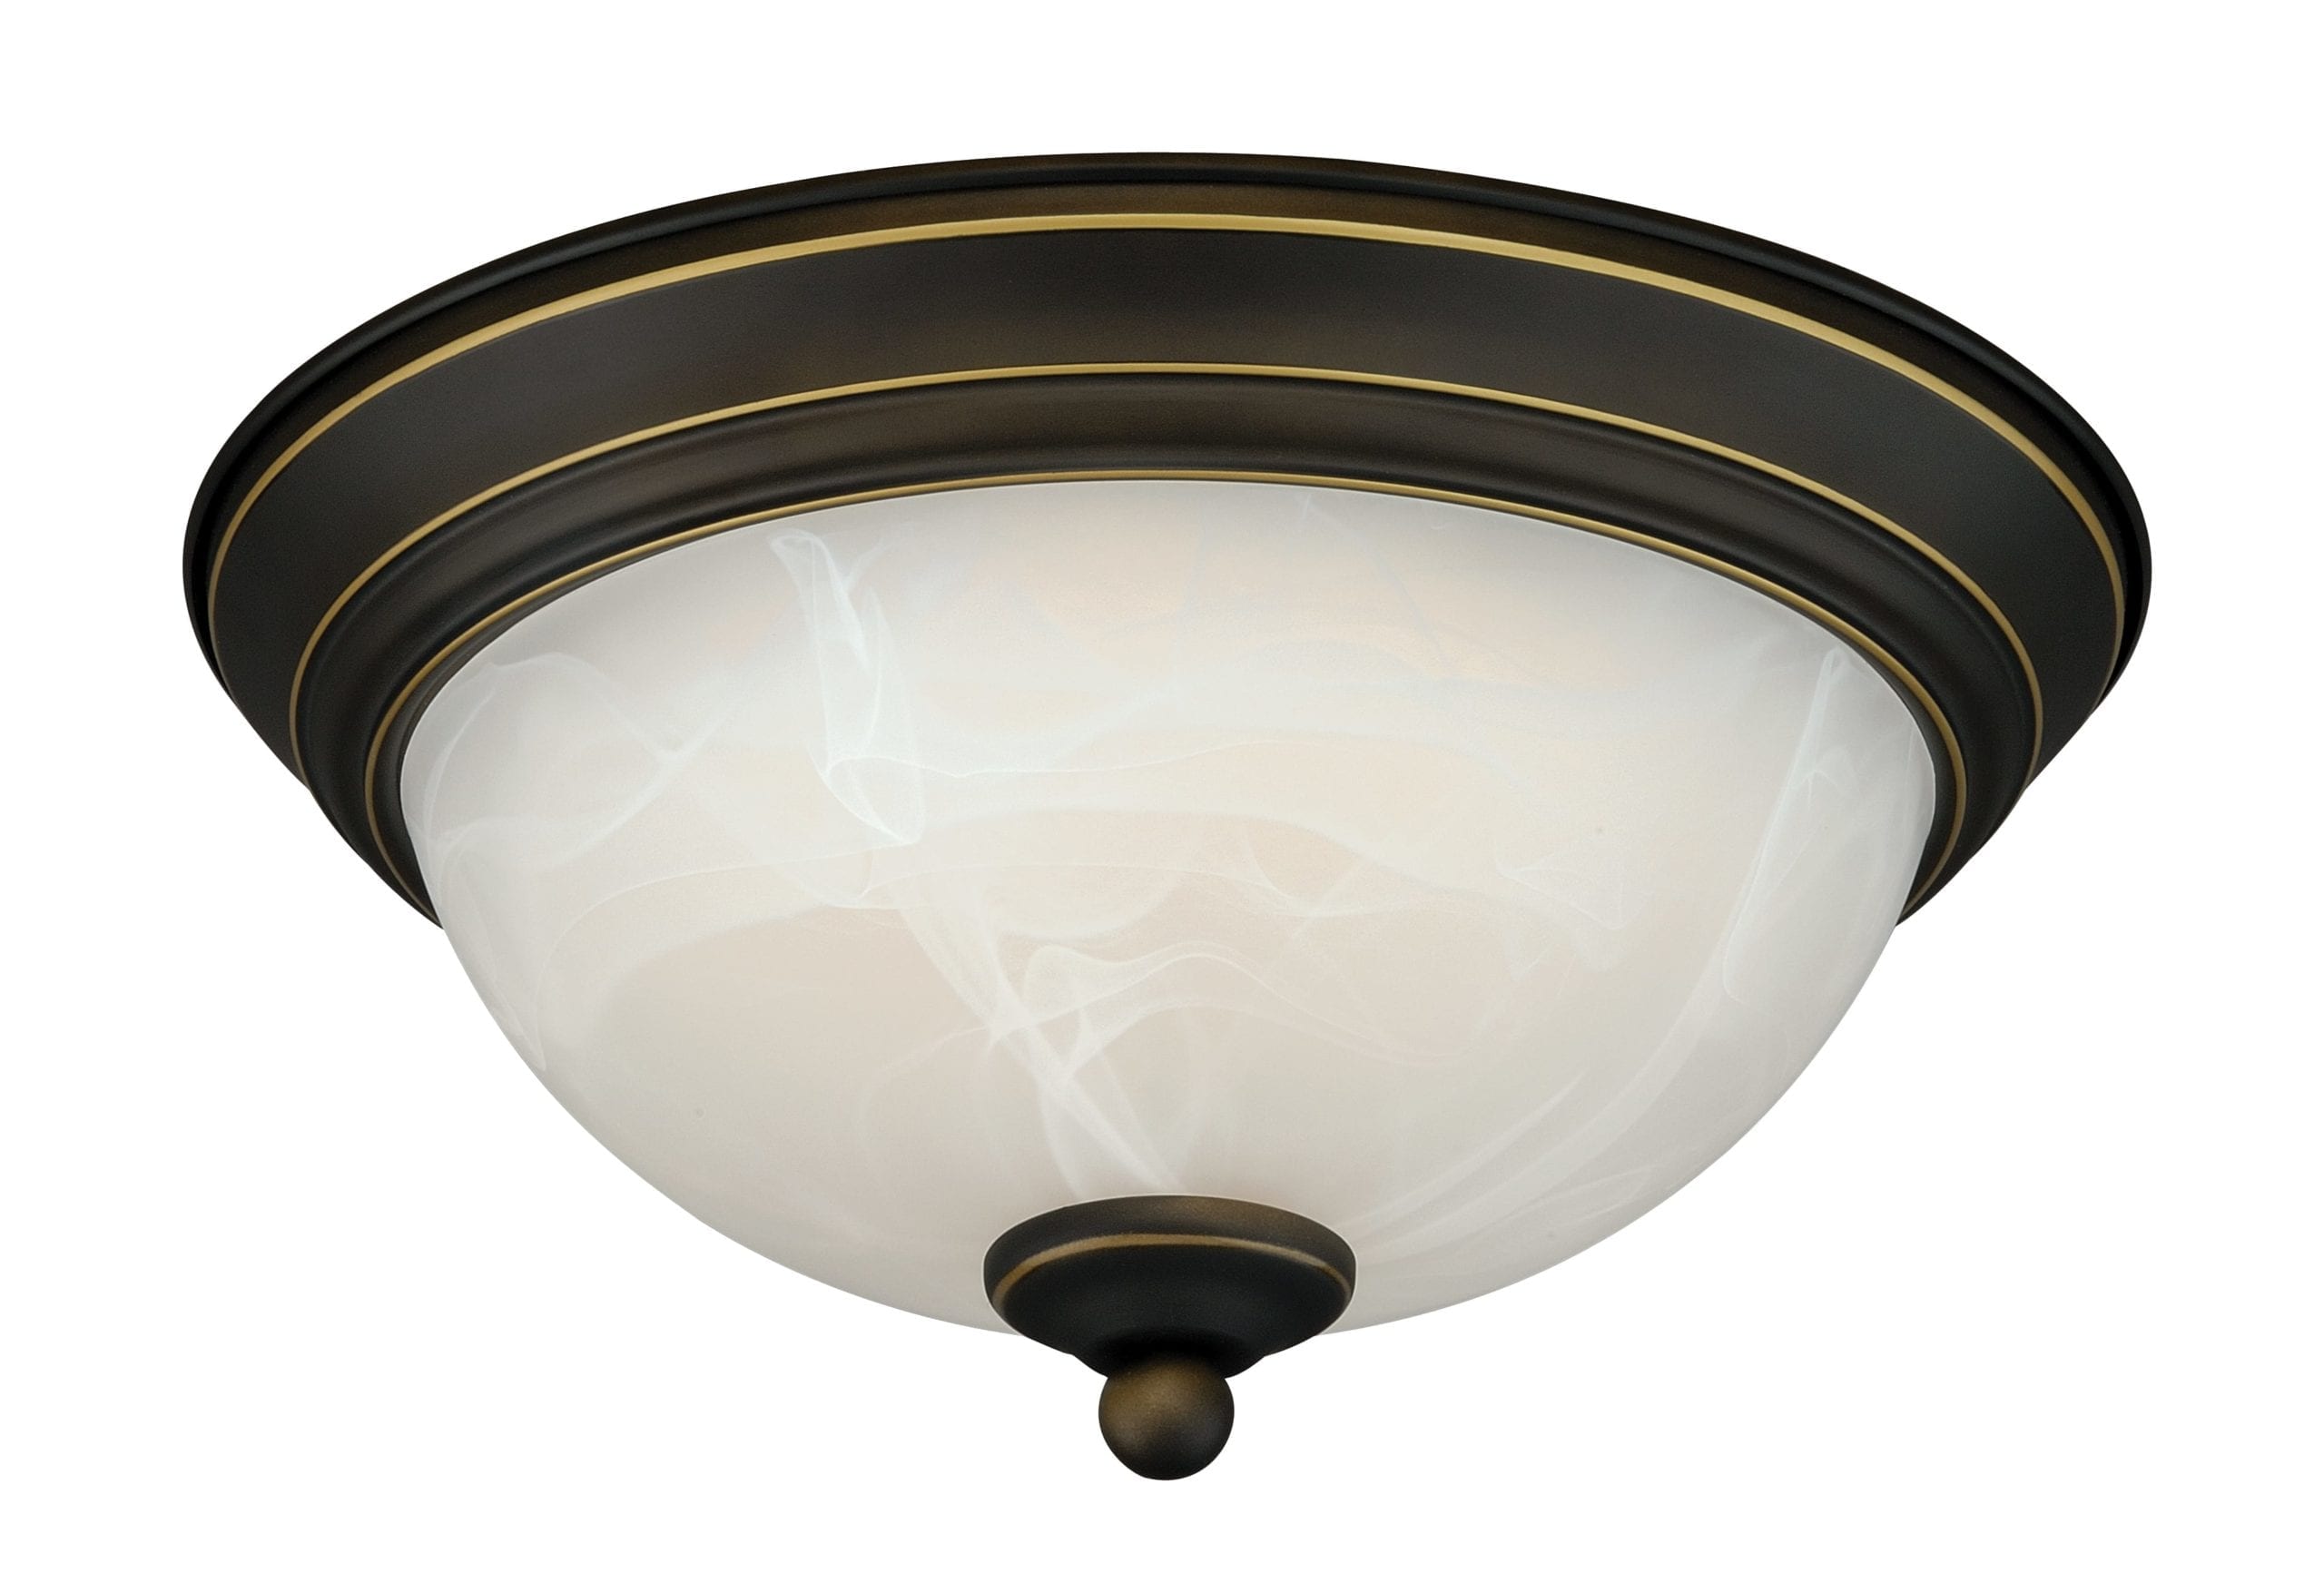 largeoval flush mount ceiling light for kitchen